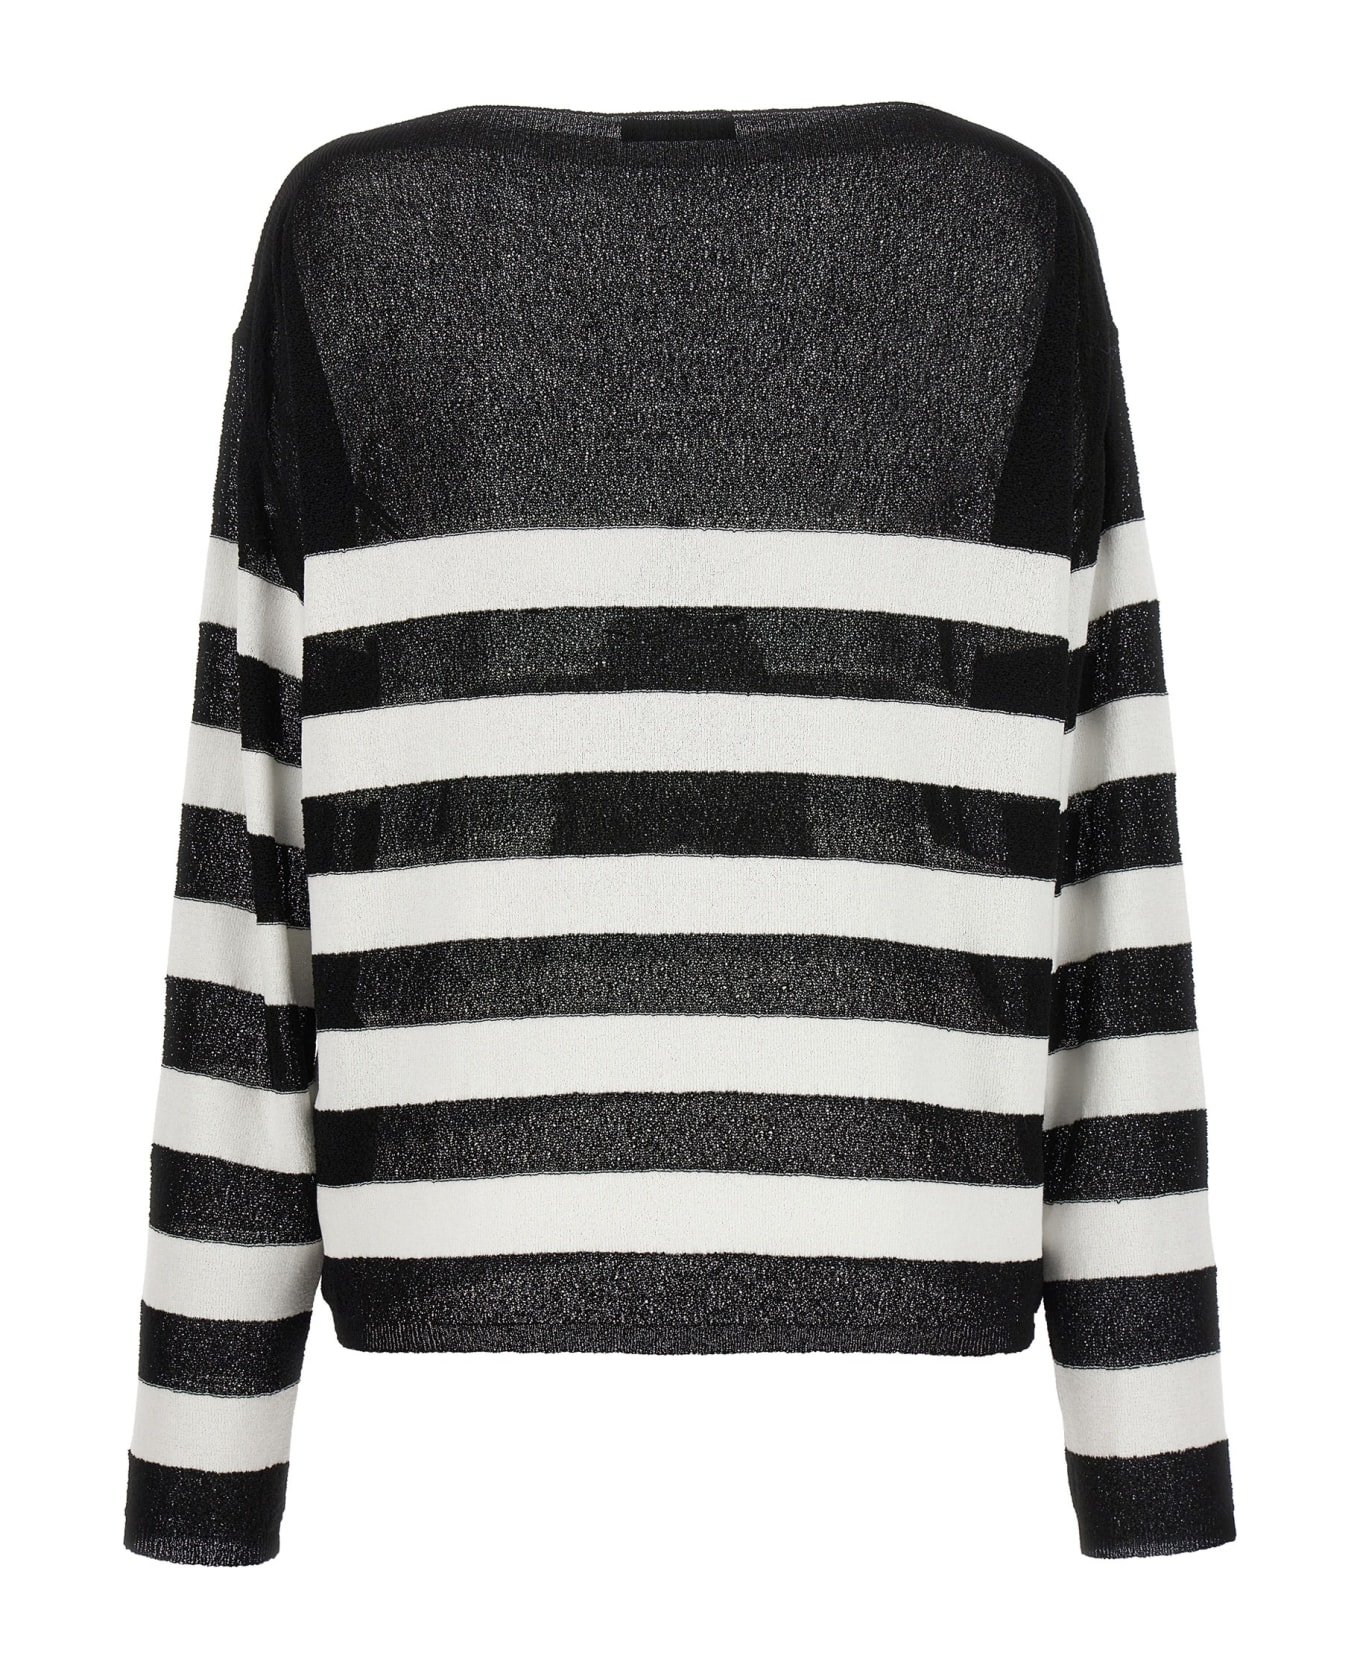 Balmain Logo Embroidery Striped Sweater - White/Black